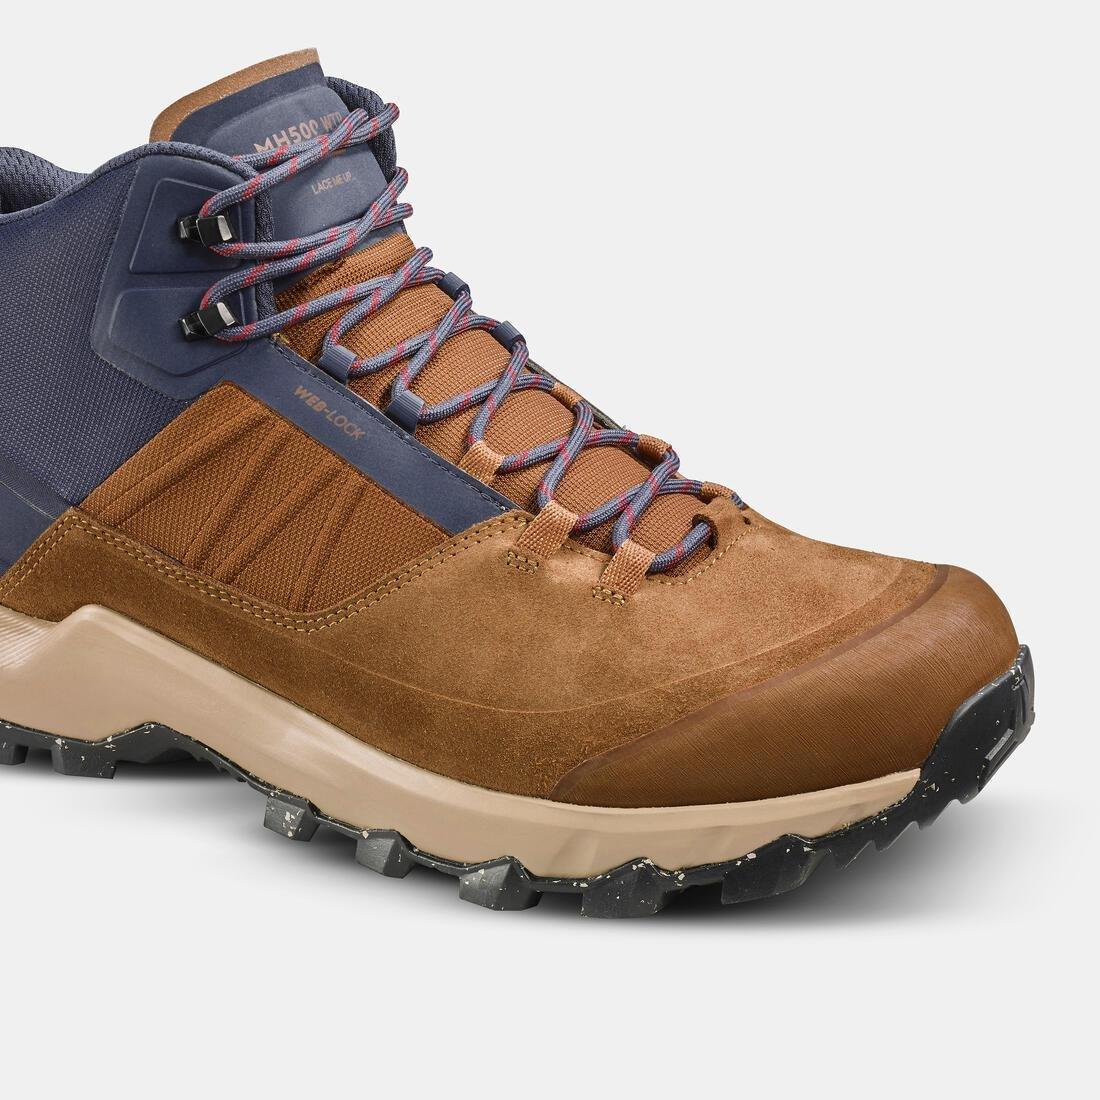 QUECHUA - Men Waterproof Mountain Walking Shoes - Mh500 Mid, Grey